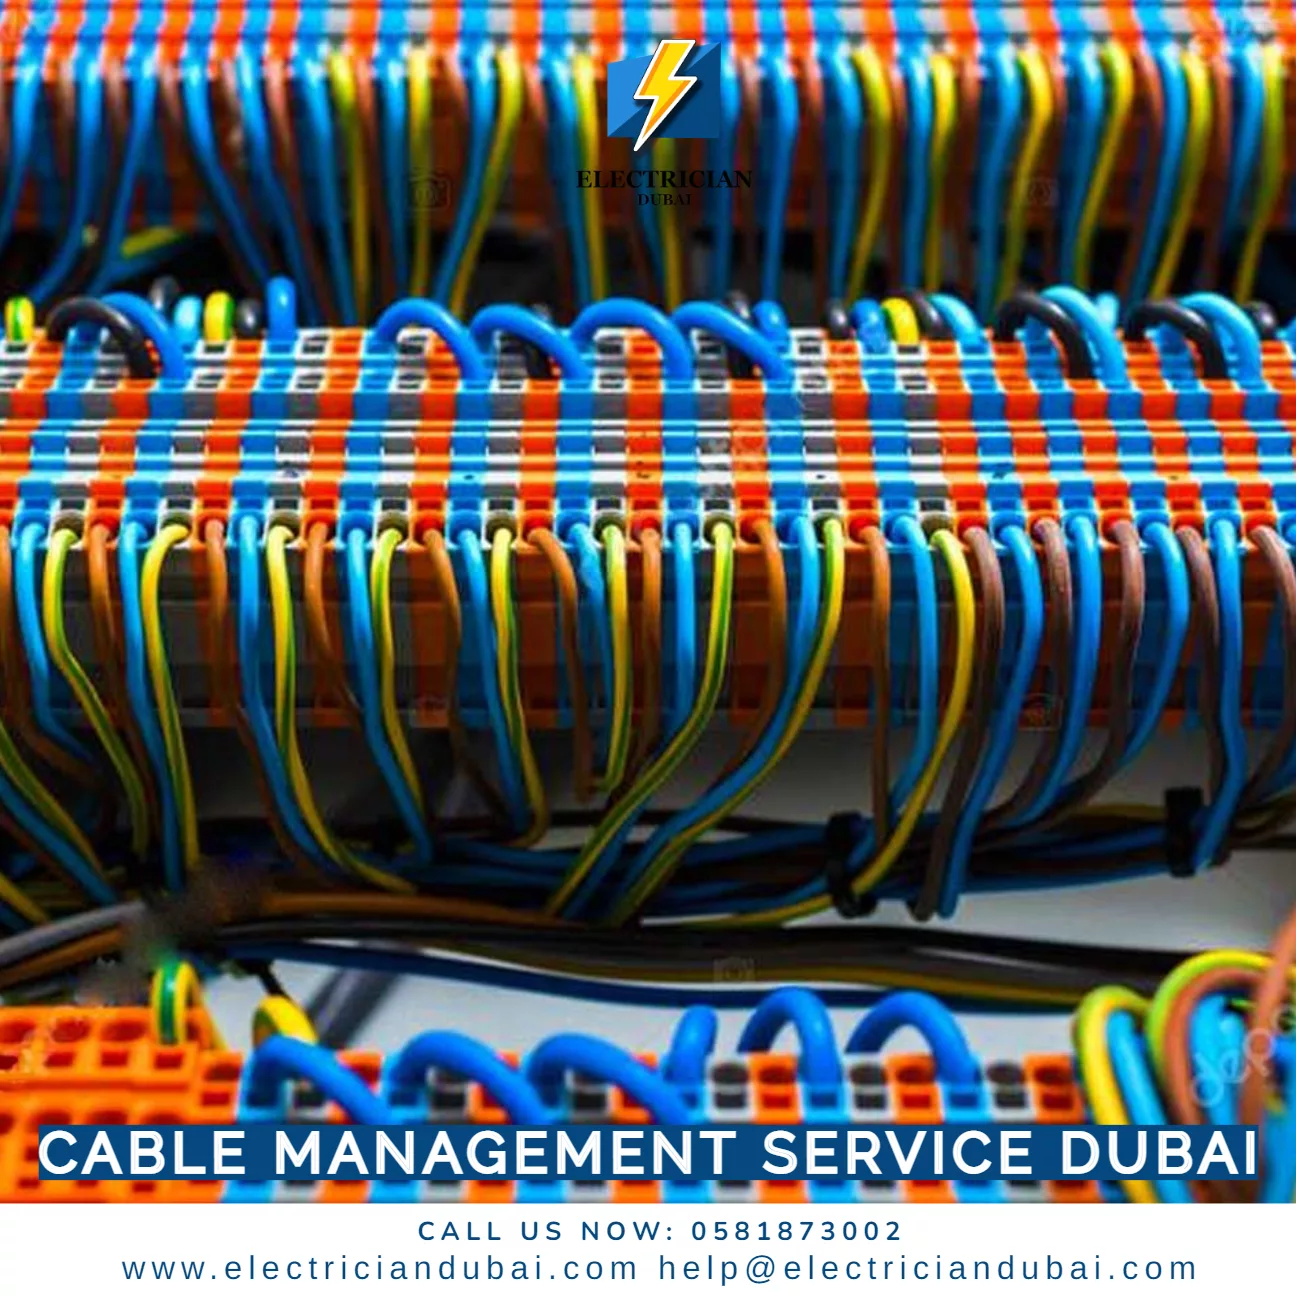 Cable Management Service Dubai